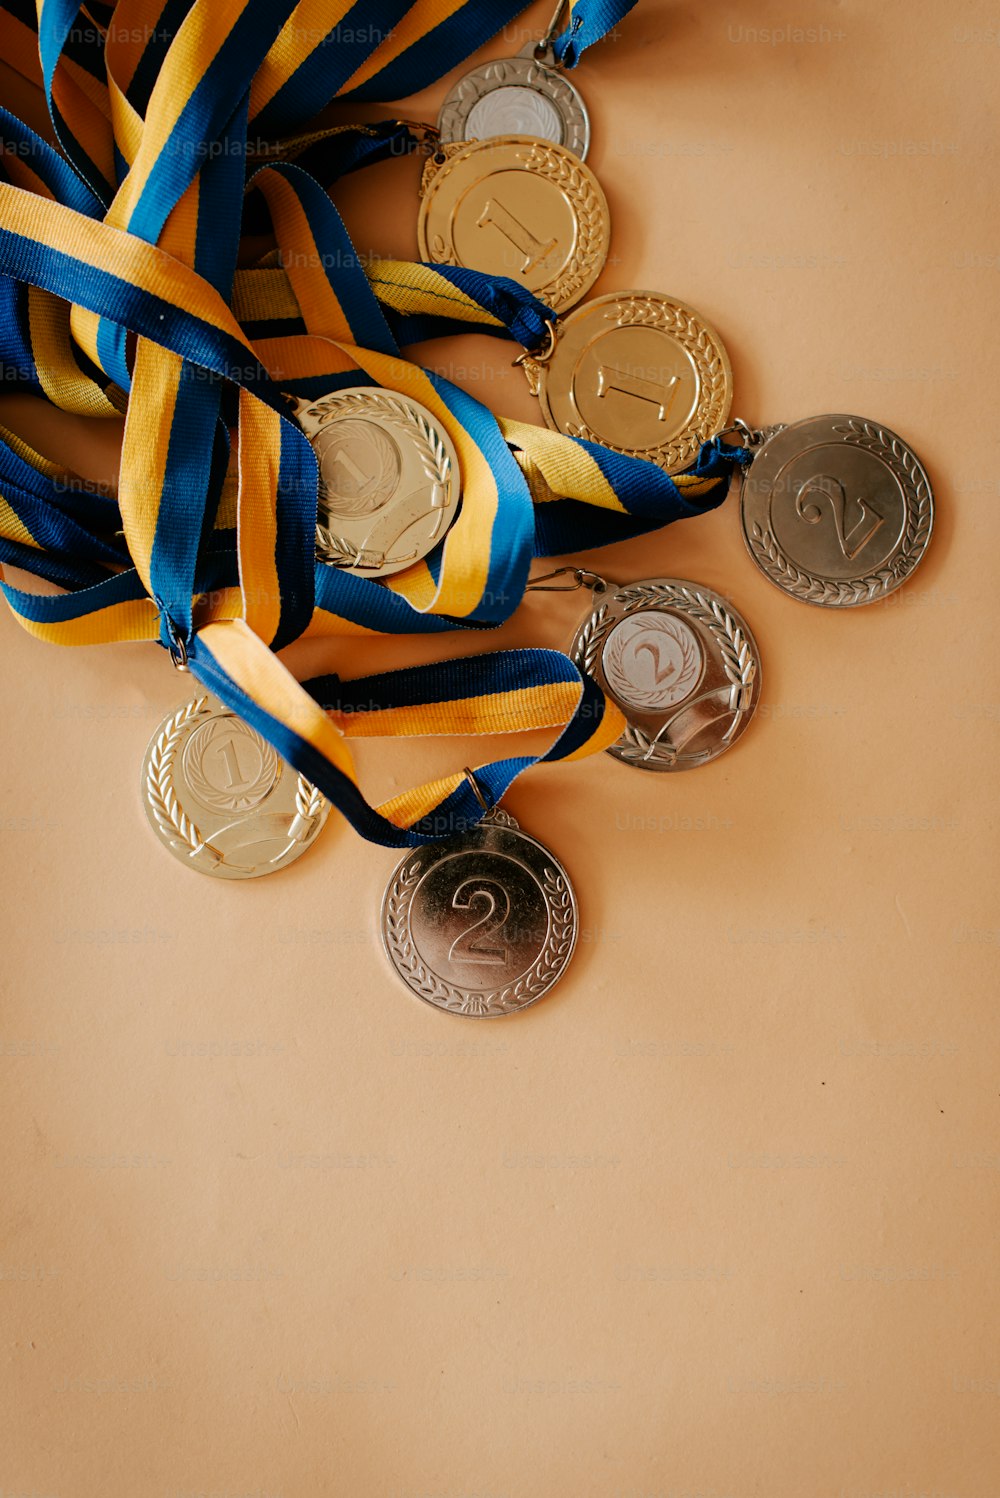 テーブルの上に置かれたメダルの束